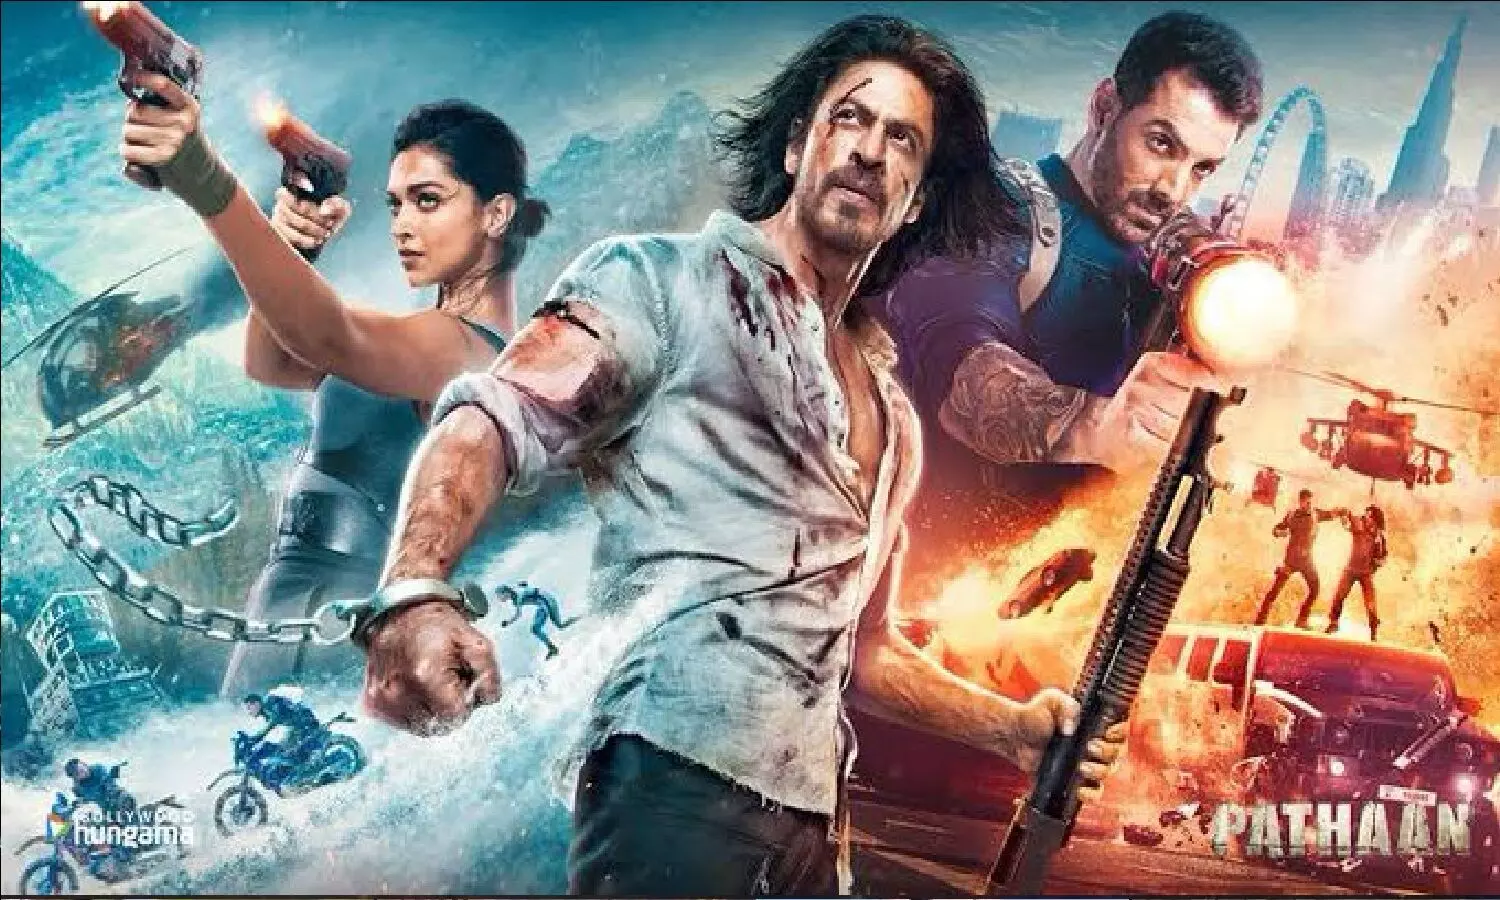 Pathaan Movie Review: धमाकेदार है SRK की वापसी, मगर फिल्म देखने से पहले पठान मूवी रिव्यू पढ़ने में फायदा है